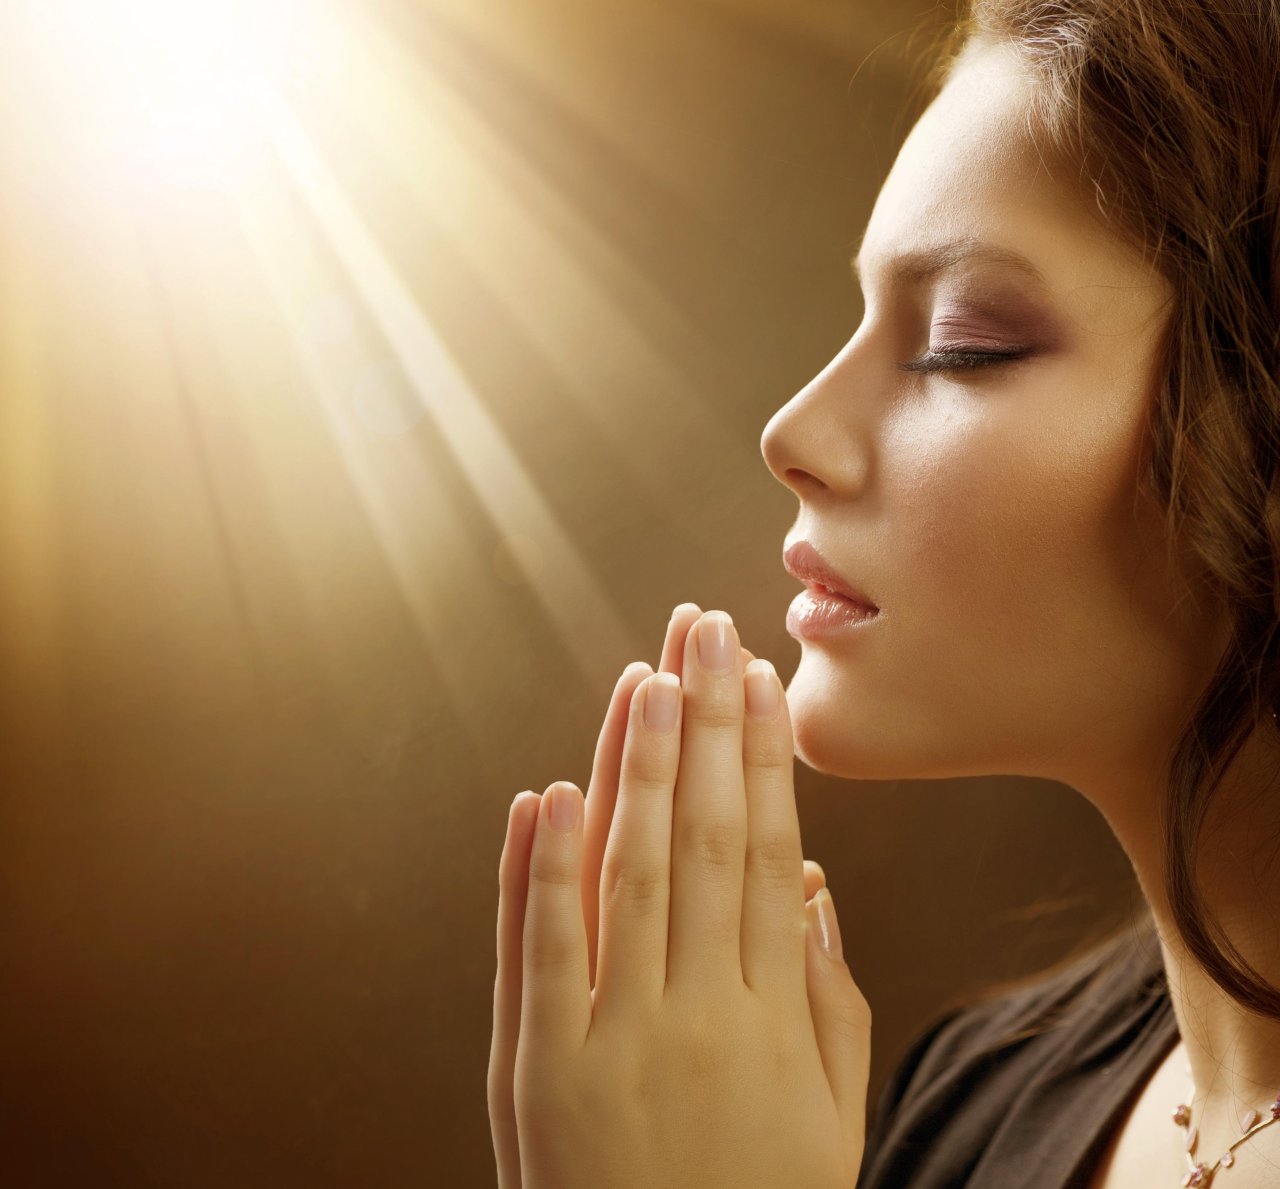 При сердечной молитве нужно вознестись к Господу всеми силами души!